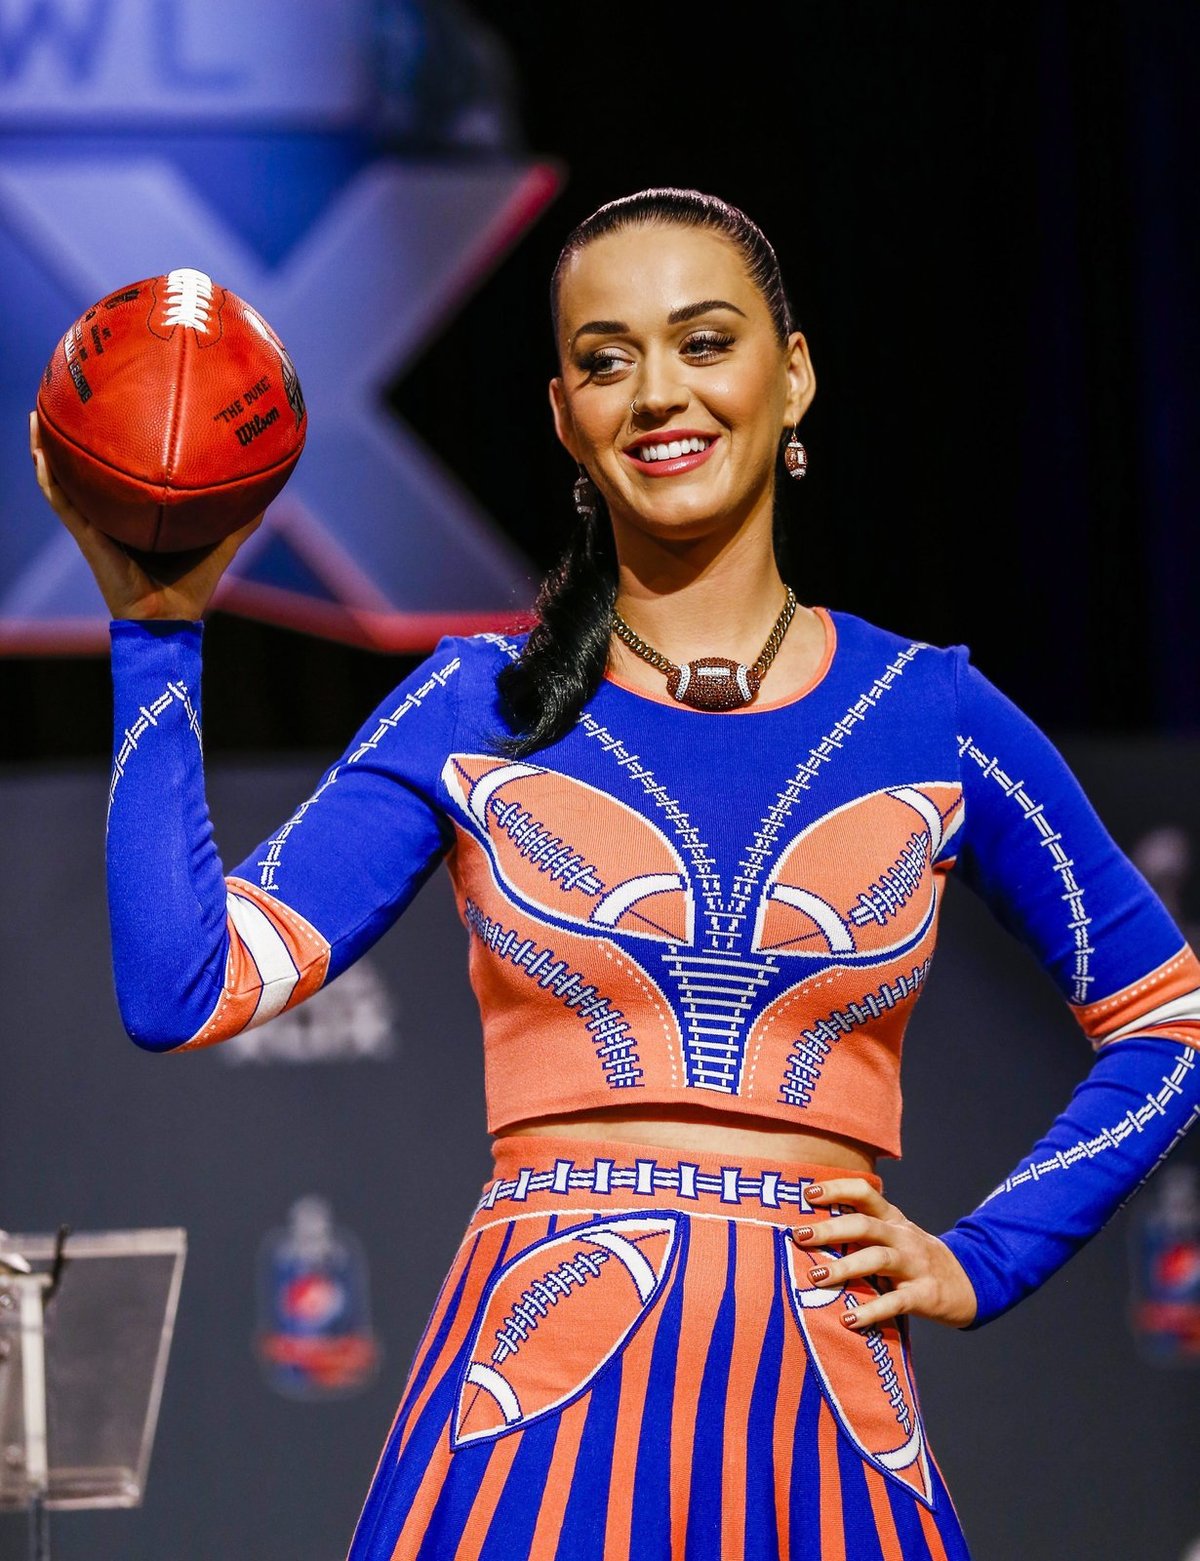 Americká zpěvačka Katy Perry dorazila na tiskovou konferenci k Super Bowlu jako roztleskávačka v šatičkách s fotbalovými motivy